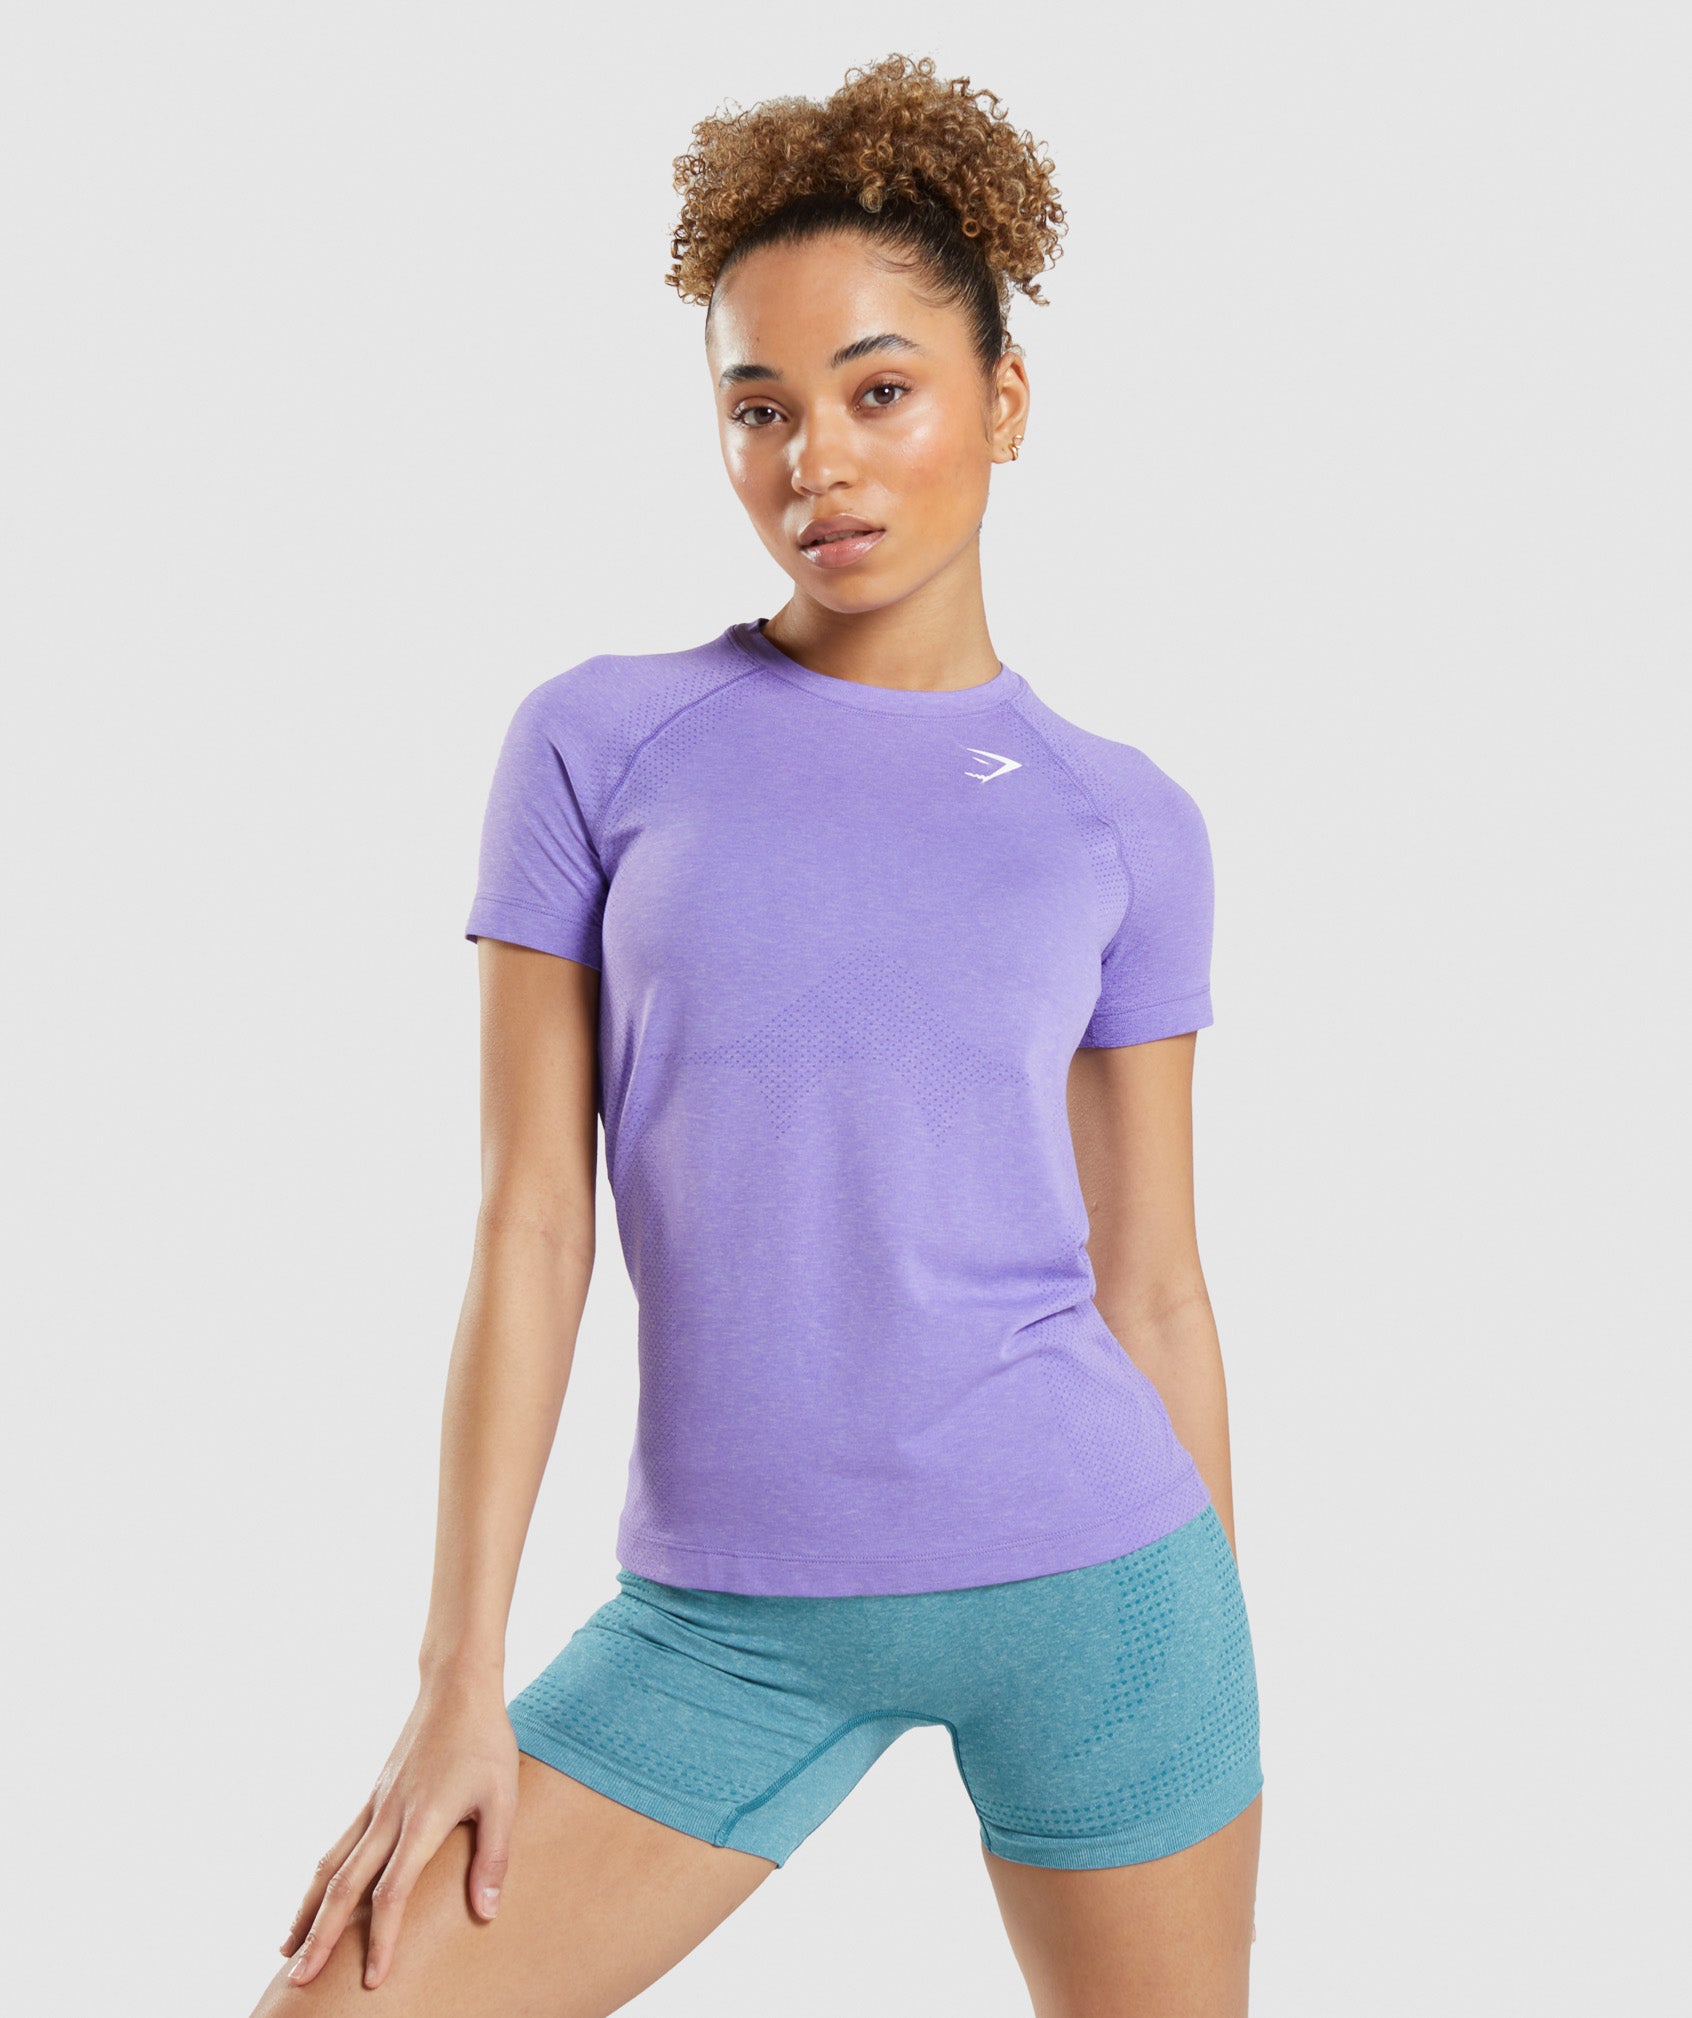 Vital Seamless 2.0 Light T-Shirt in Bright Purple Marl - view 1